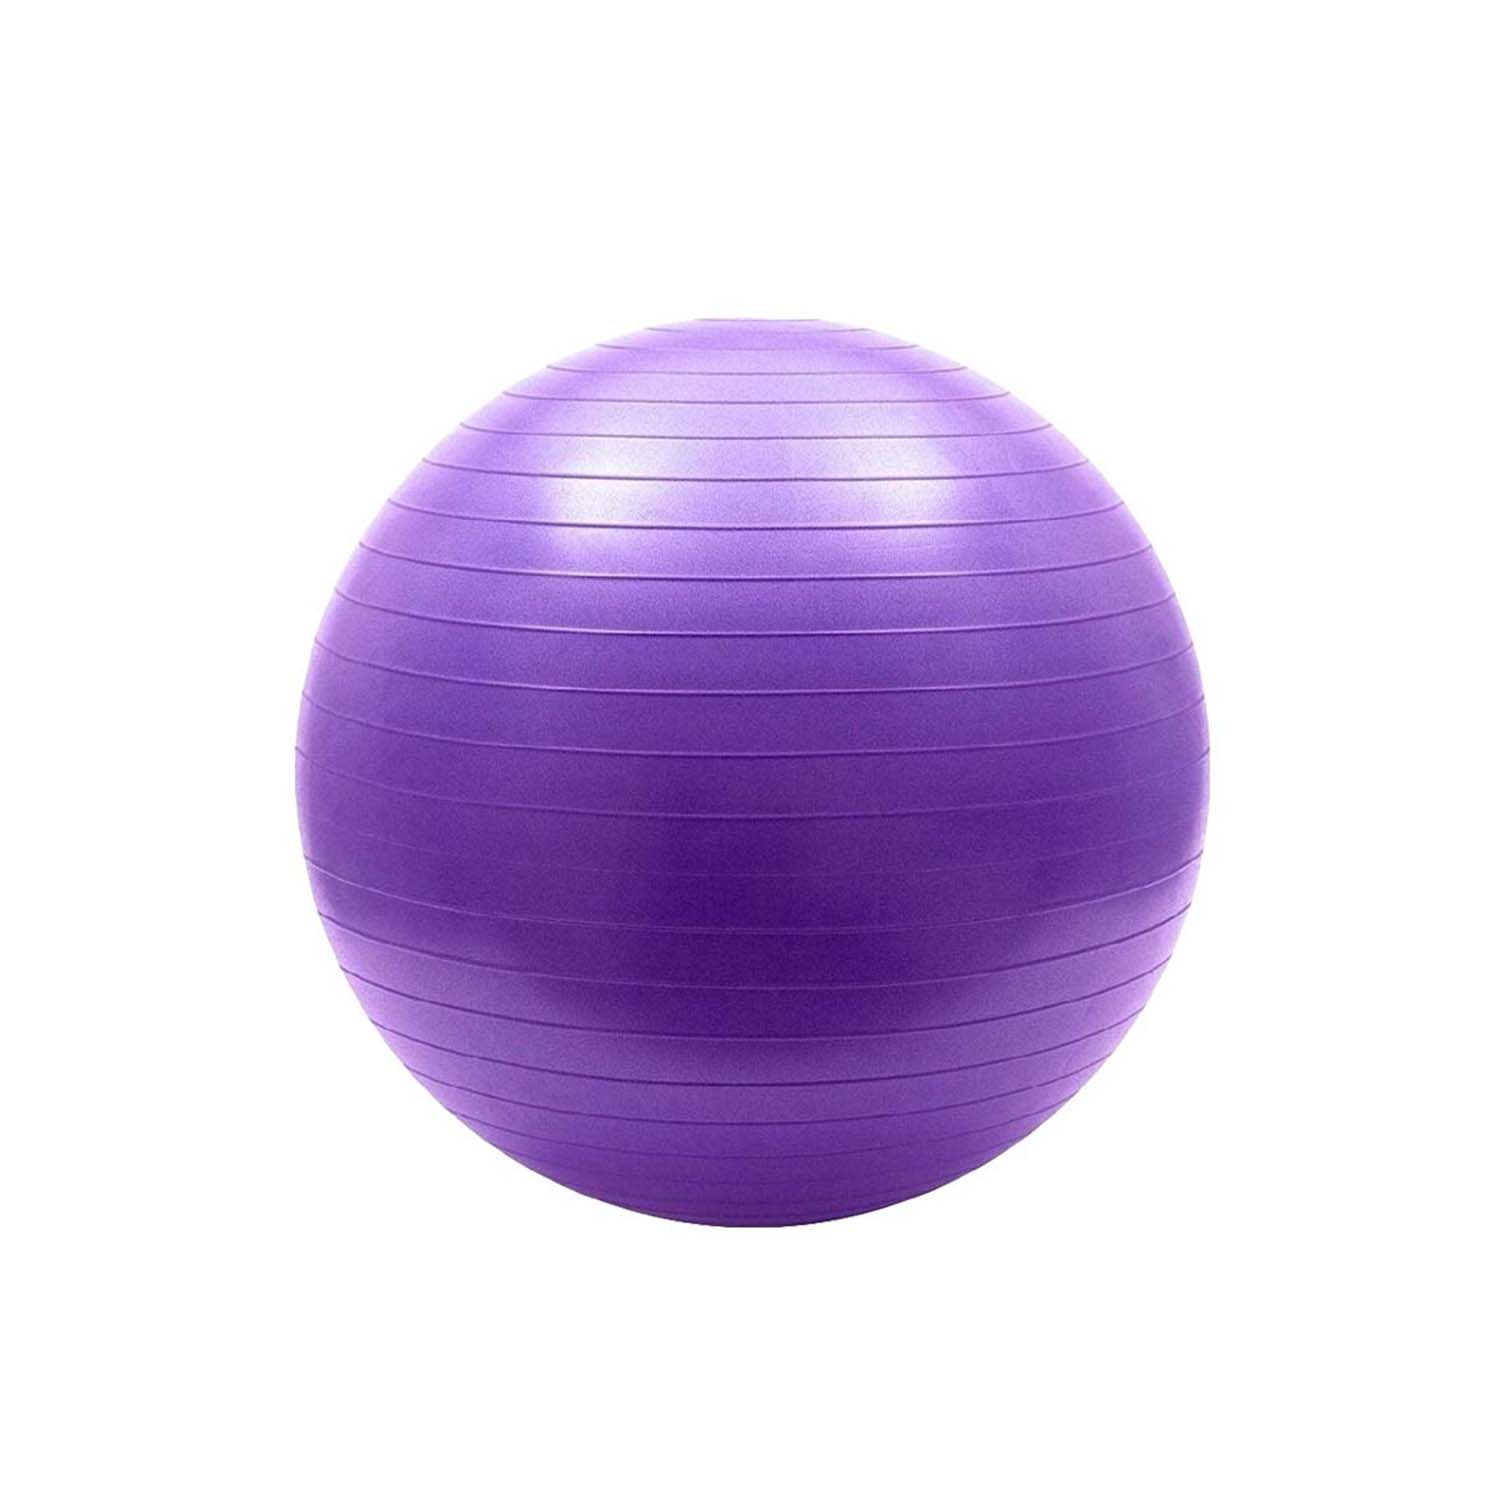 Гимнастический мяч (фитбол) Solmax для фитнеса и тренировок 65 см фиолетовый